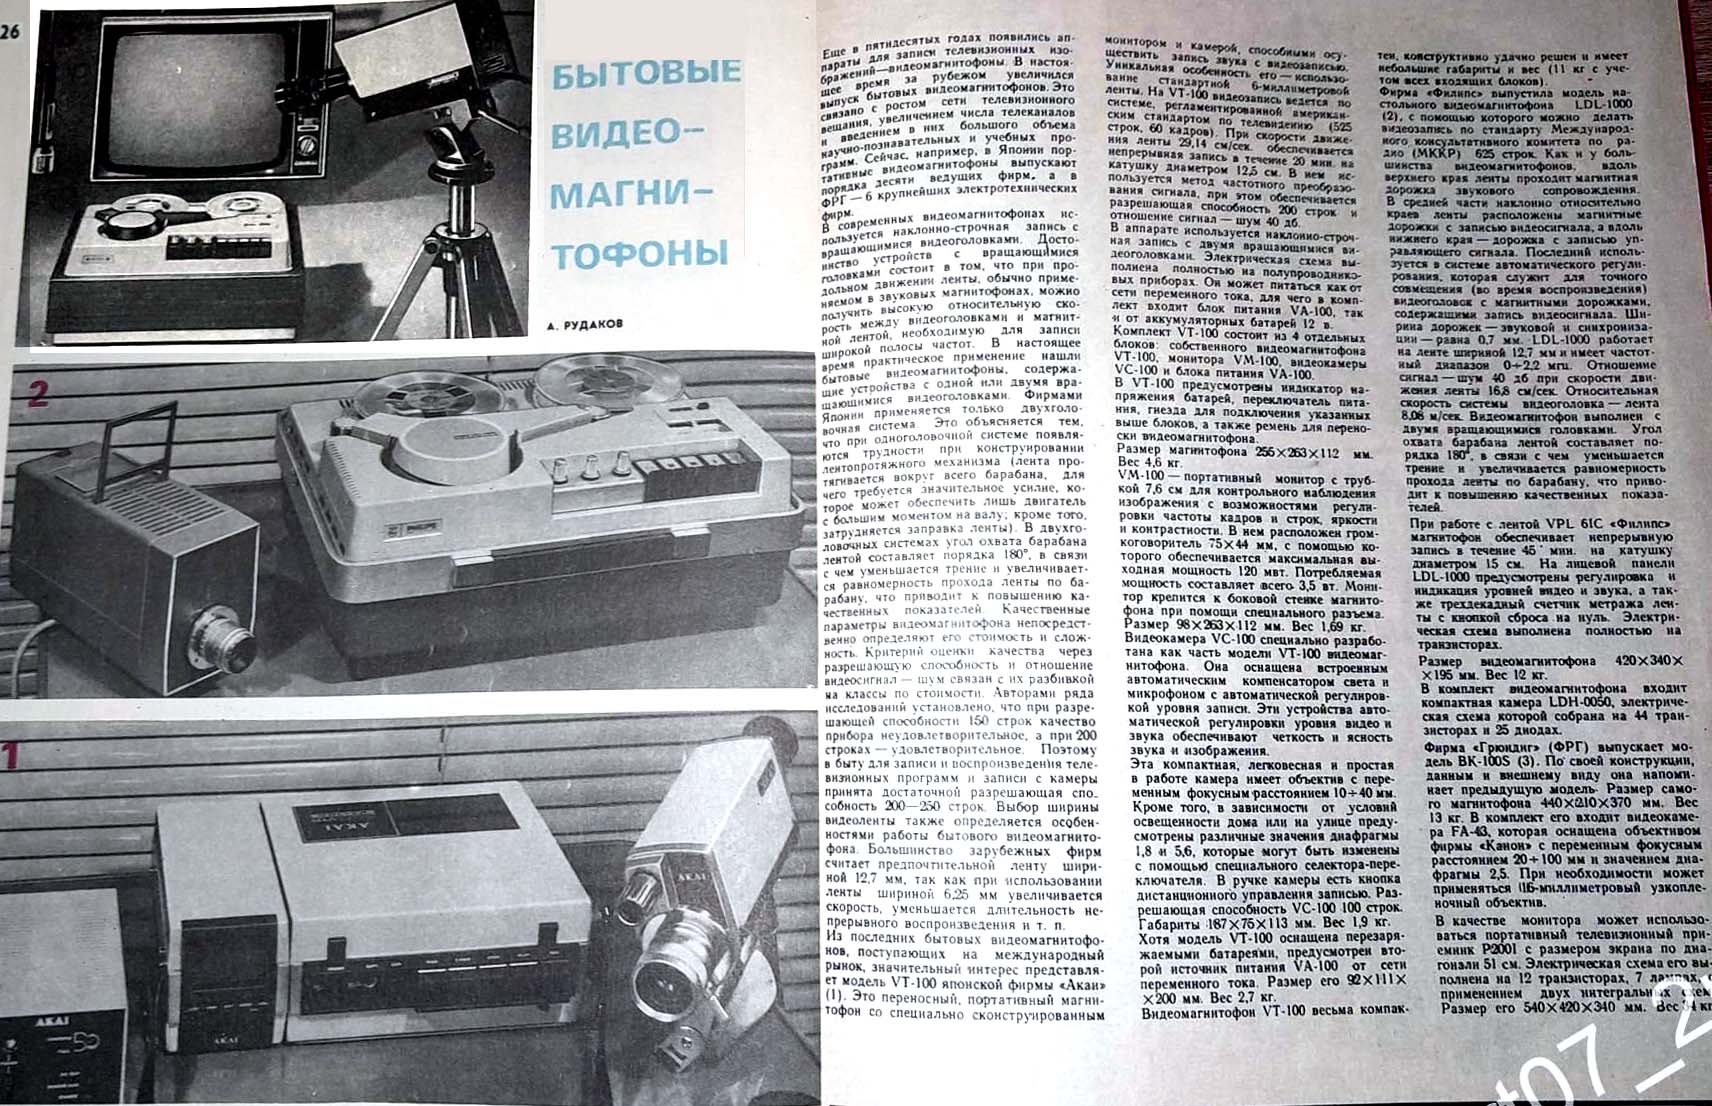 Журнал "Новые Товары" Видео-магнитофоны начала 1970-х Видео-камеры и мониторы